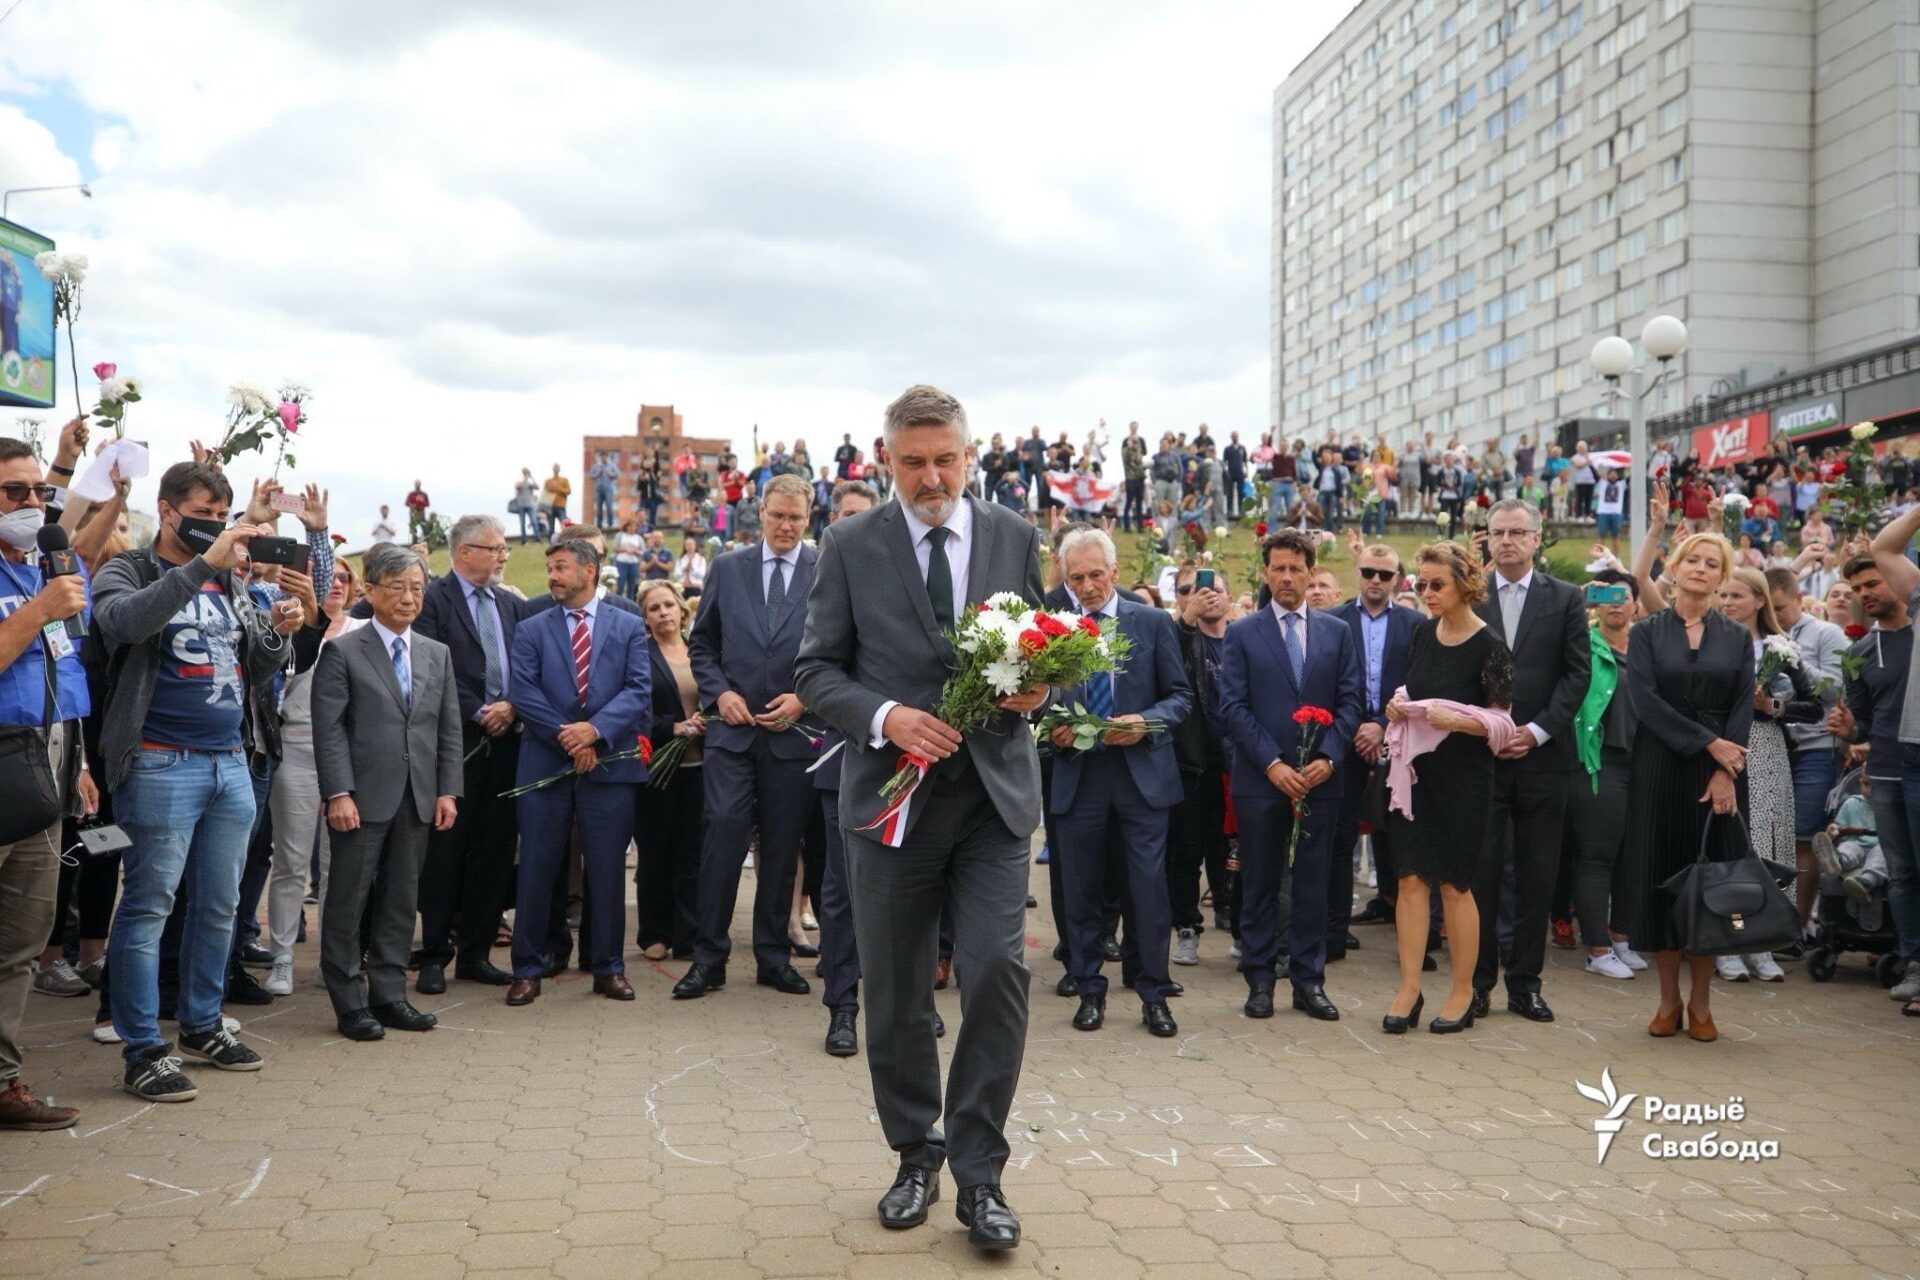 Polski ambasador złożył kwiaty w Mińsku